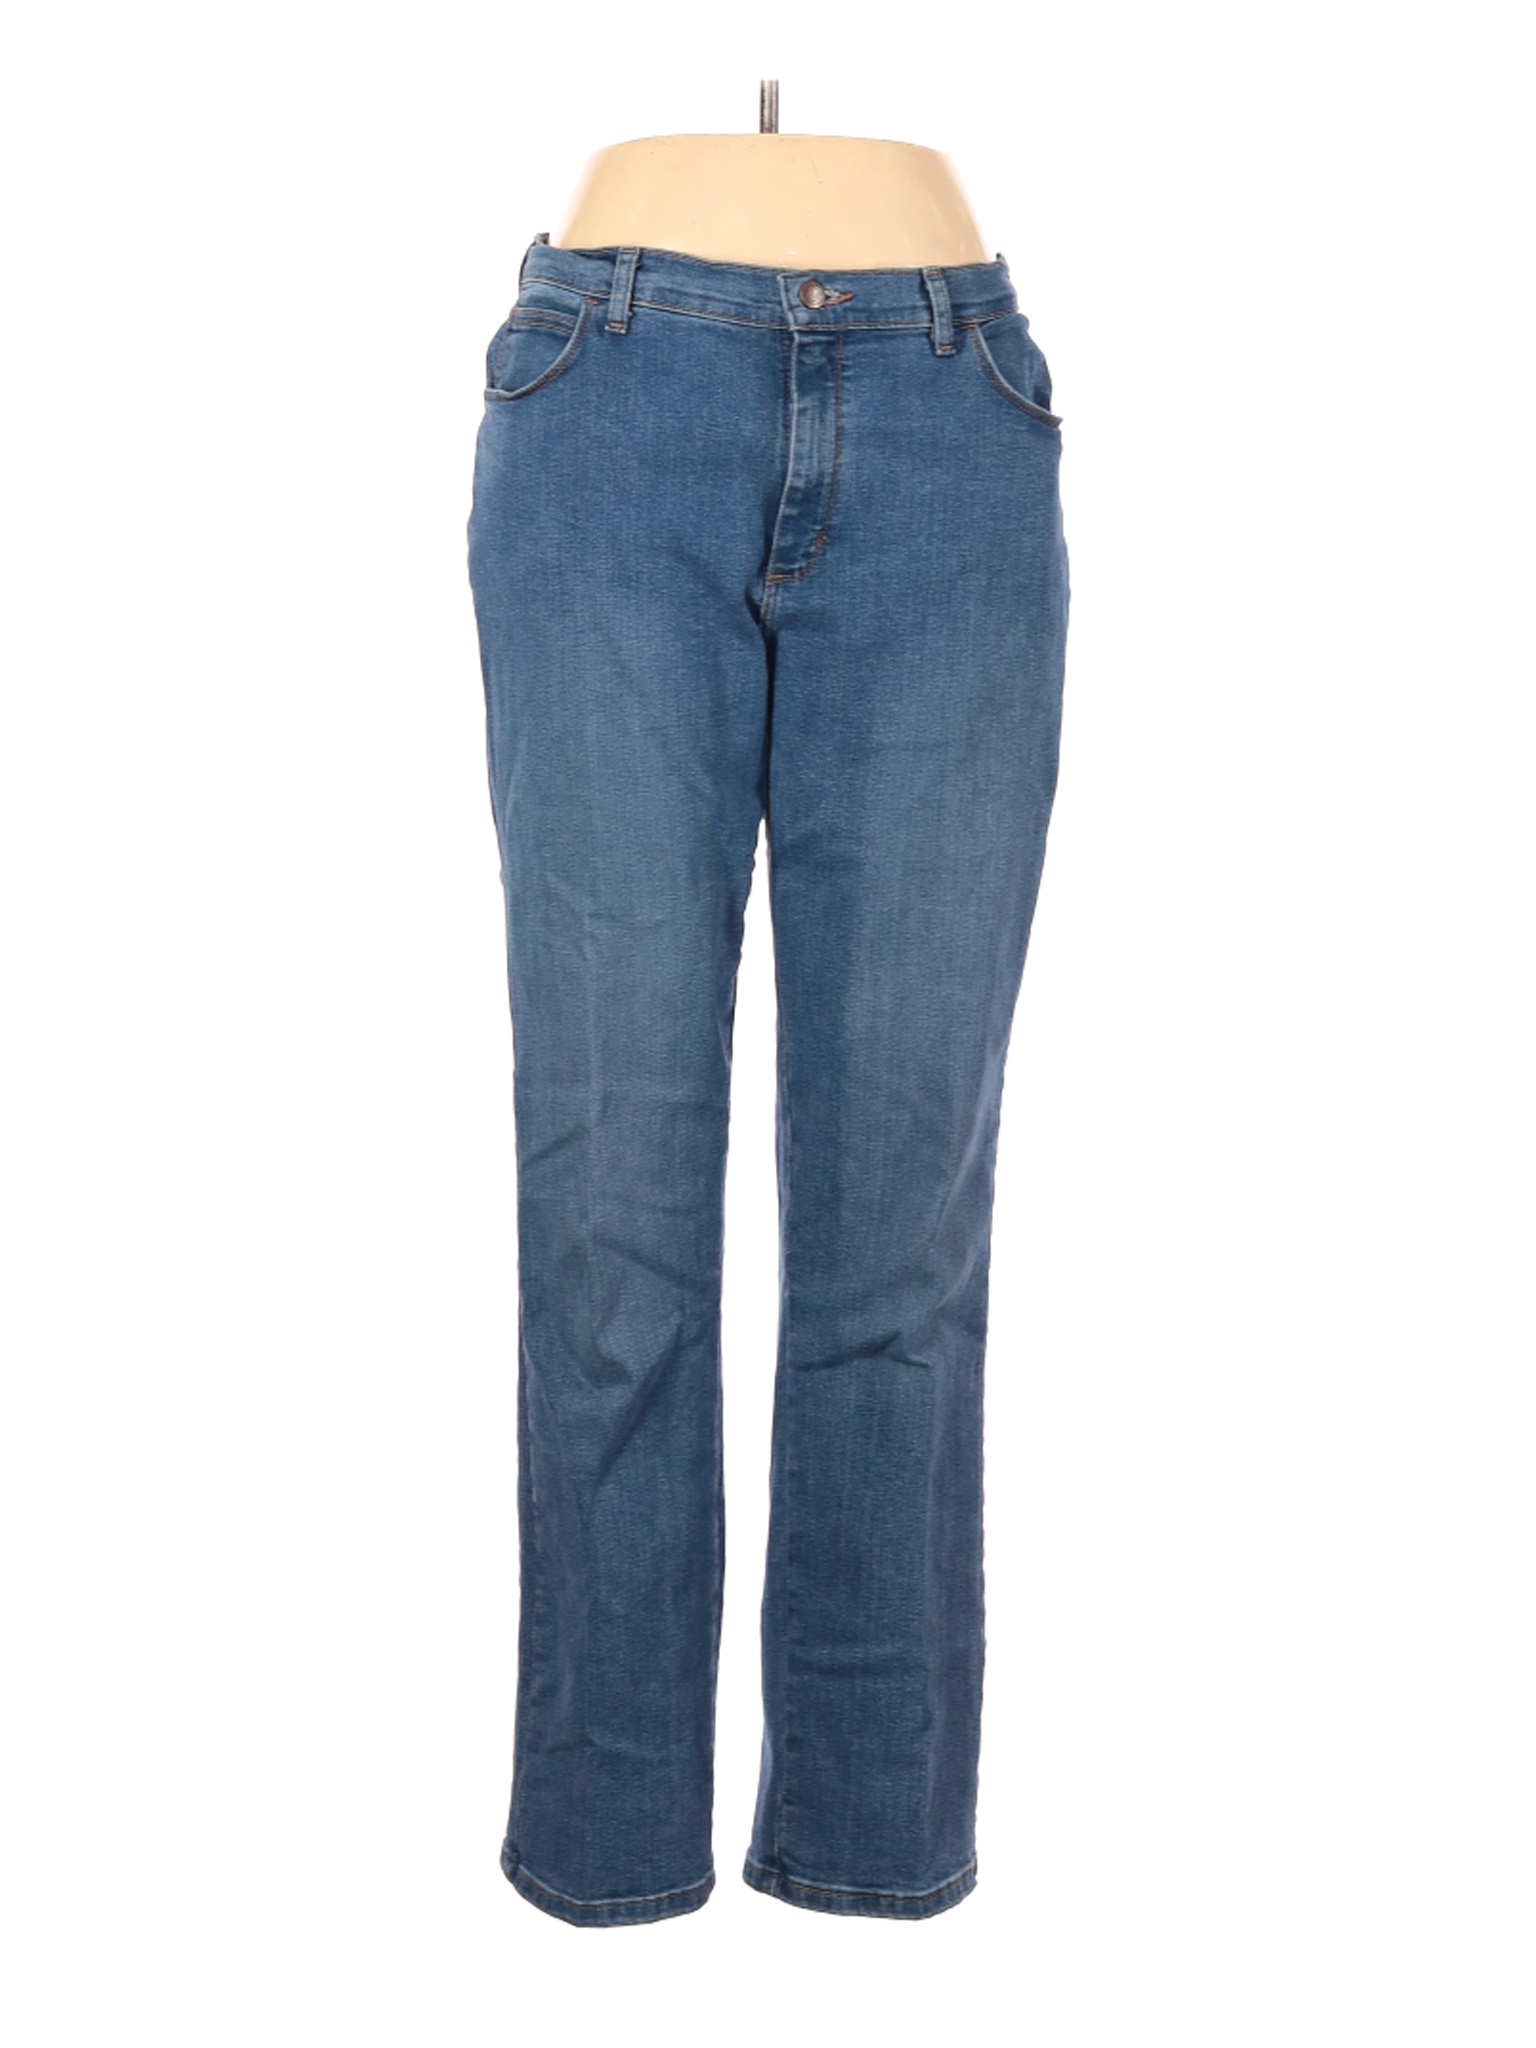 Lee Women Blue Jeans 12 | eBay